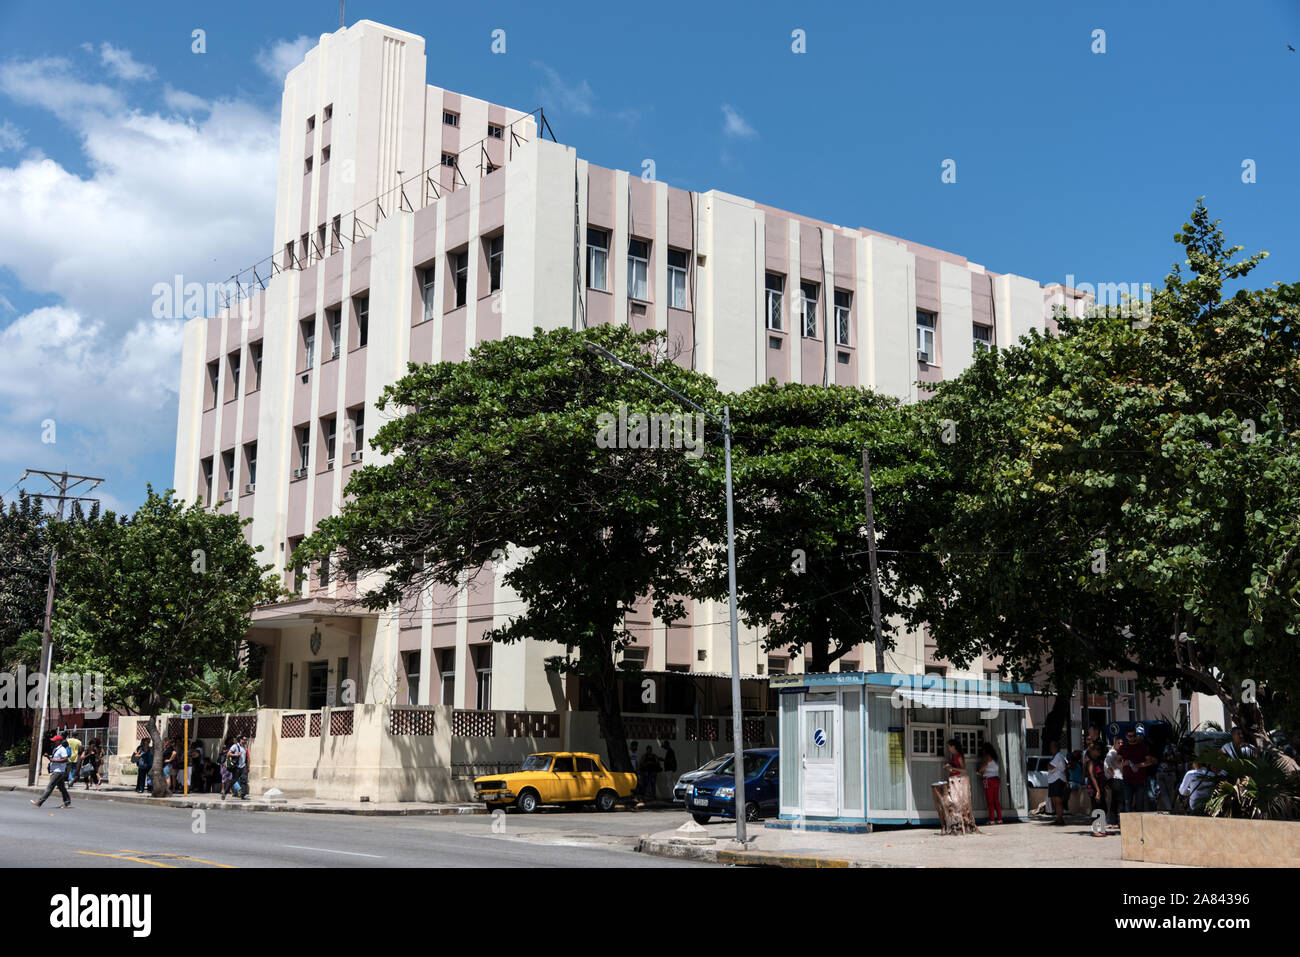 Cuban Ministry of Labour and Social Security- Ministerio del Trabajo y Seguridad Social in Avenida 23, Vedado, Havana in Cuba Stock Photo